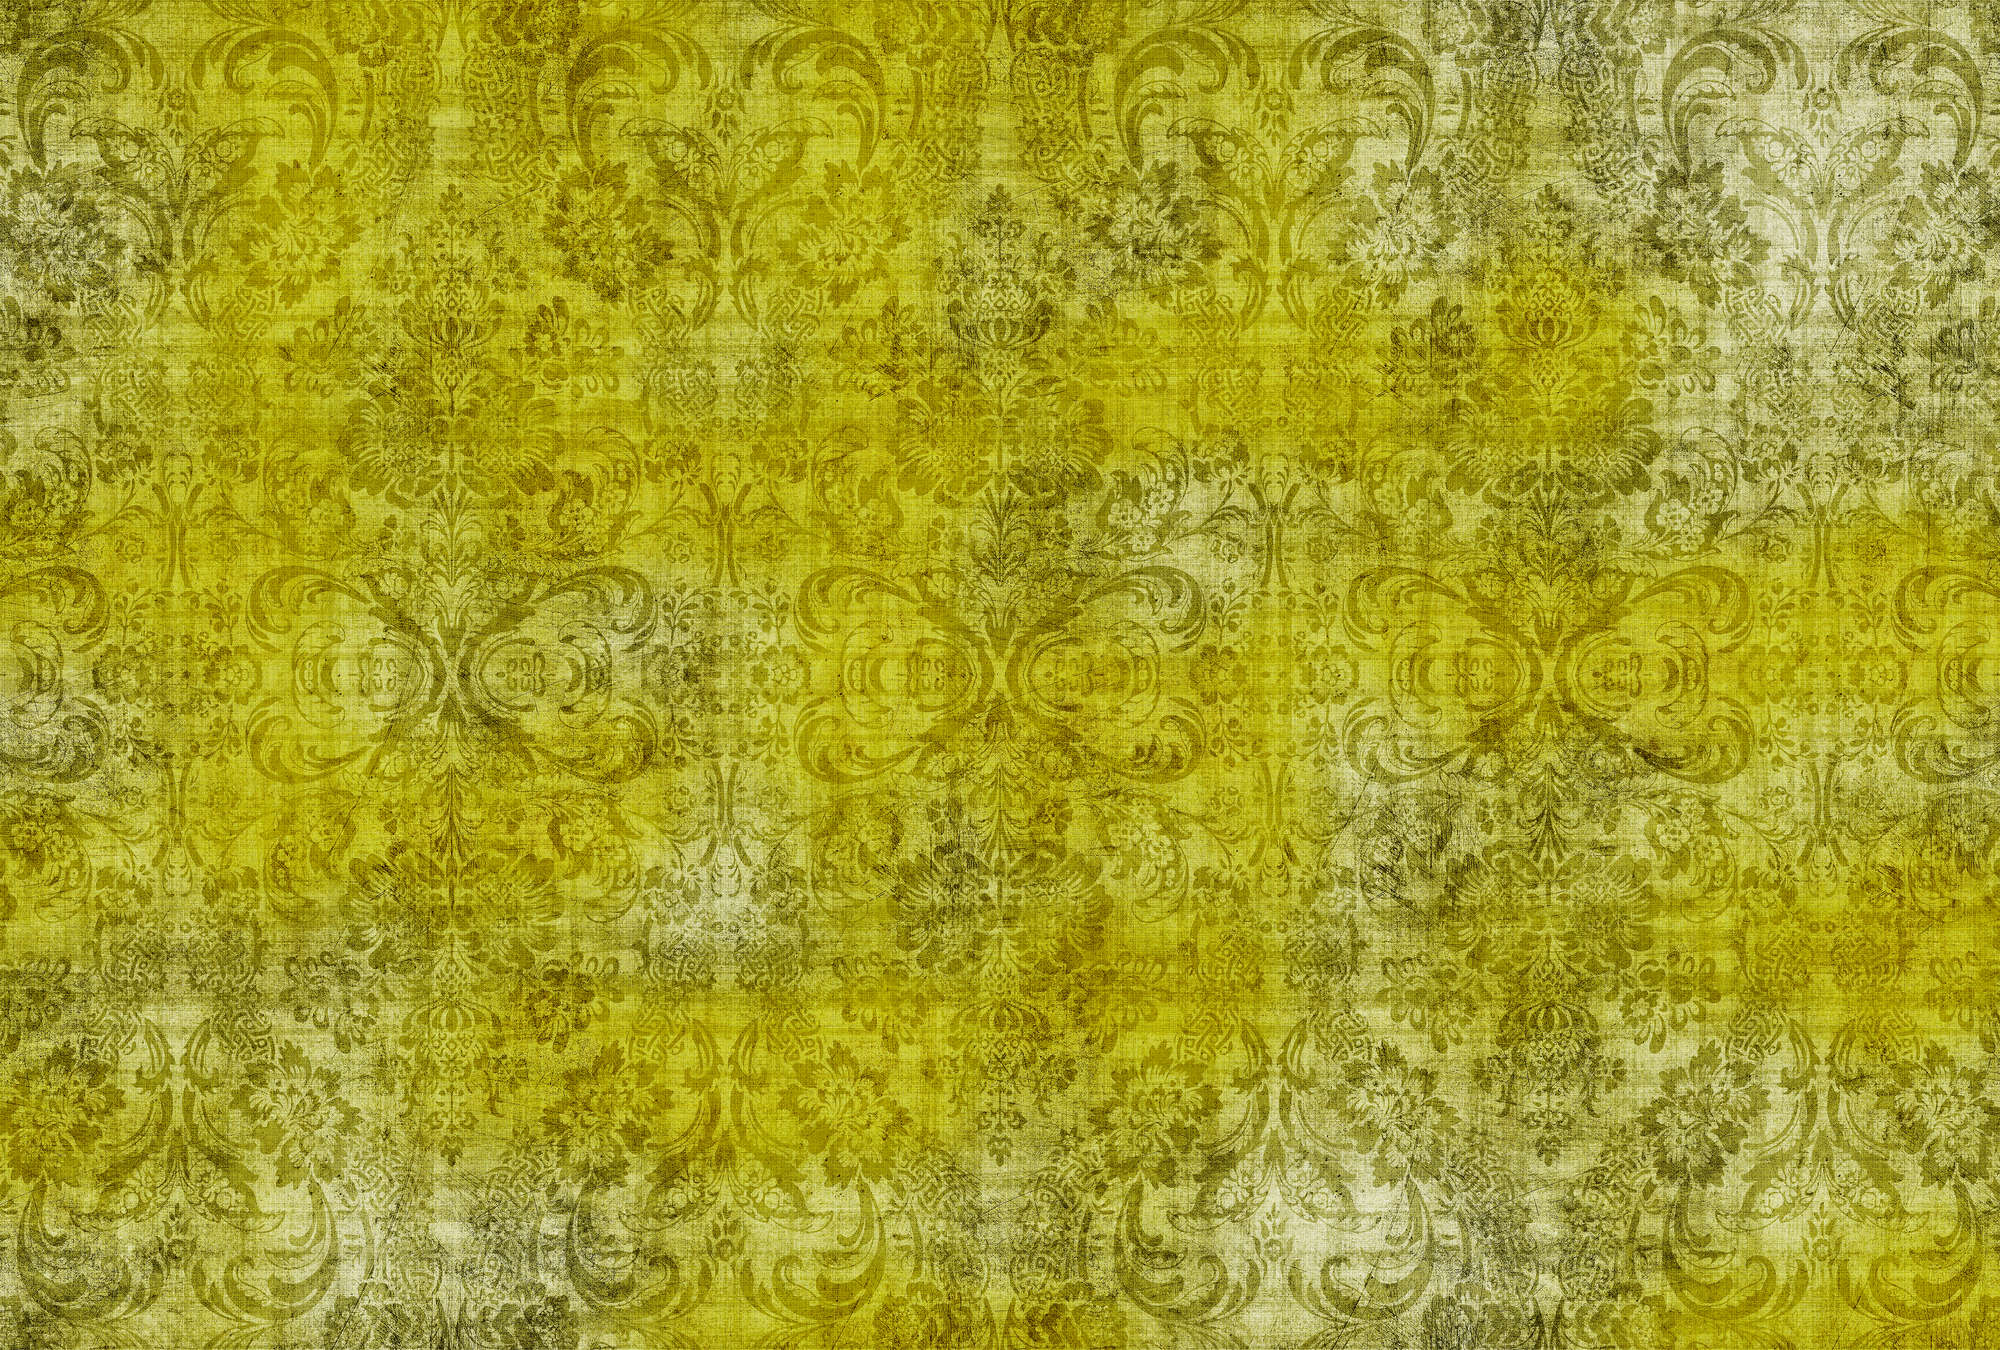             Oud damast 1 - Ornamenten op geel-motief fotobehang in natuurlijke linnenstructuur - Geel | Strukturen vlieseline
        